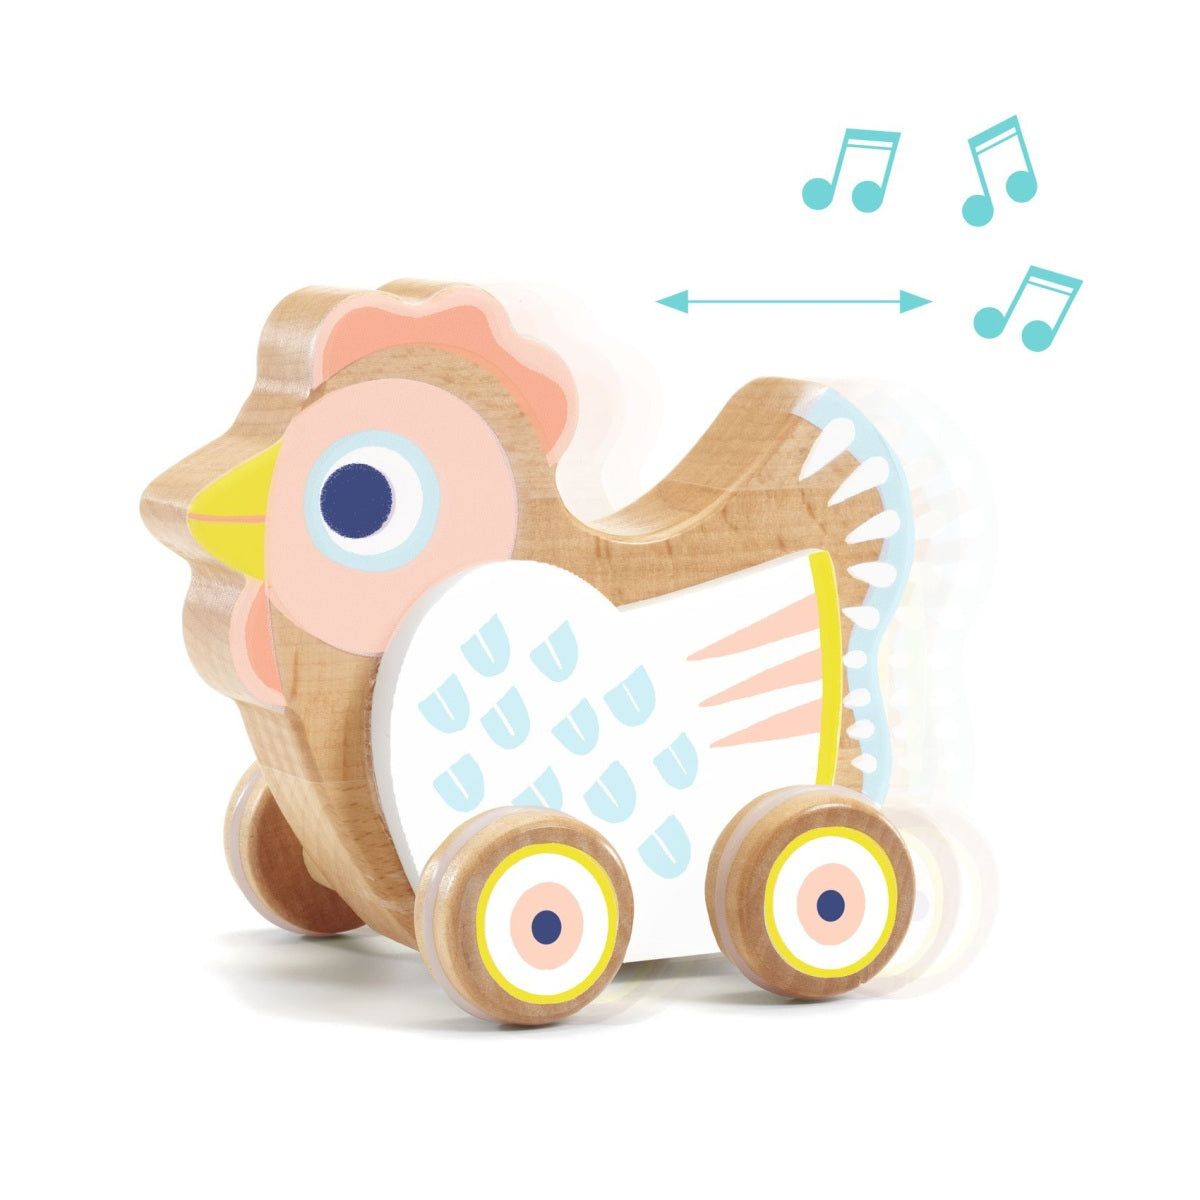 Das Schiebetier BabySing von Djeco ist ein süßes Holzspielzeug für Kinder ab 10 Monaten. Das kleine Huhn saust fröhlich durchs Zimmer und spielt dabei eine Melodie. Dabei ist es ganz egal, ob die Henne vorwärts oder rückwärts unterwegs ist.